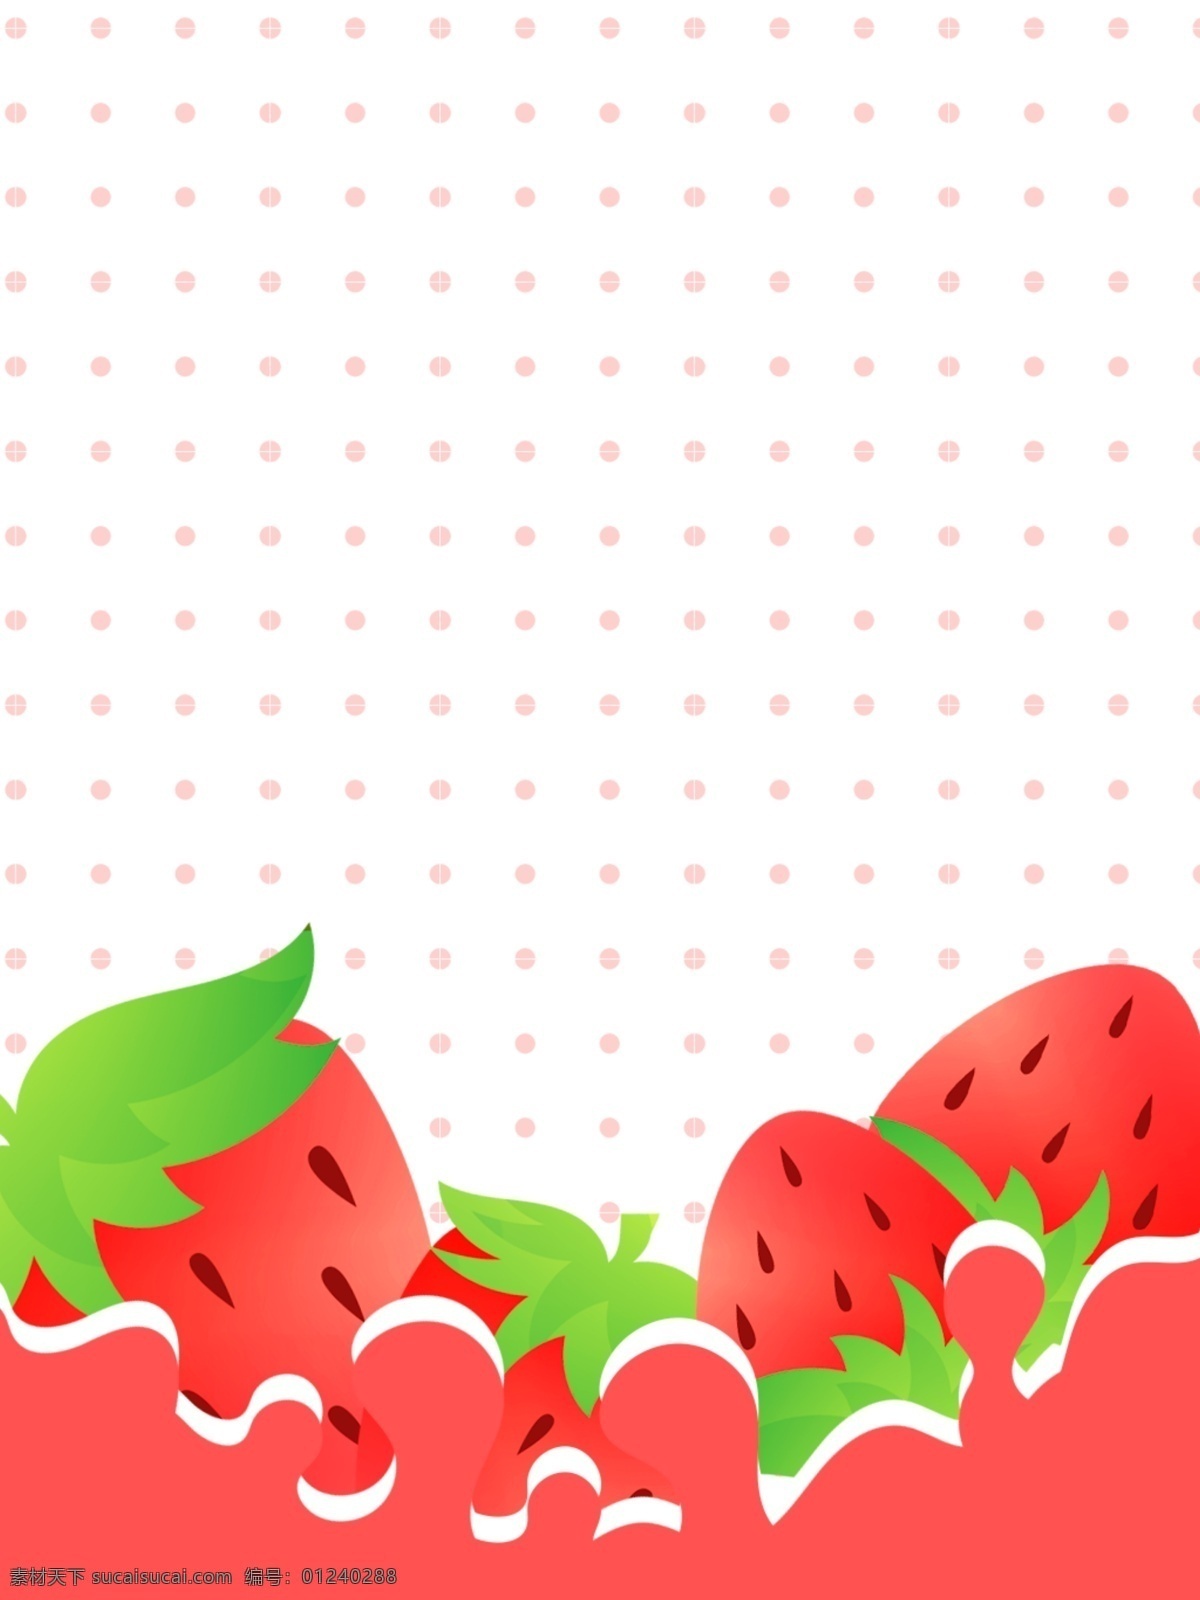 创意 水果 草莓 美食 背景 背景素材 水果背景 草莓背景 简约 美食素材 蔬果素材 草莓素材 广告背景